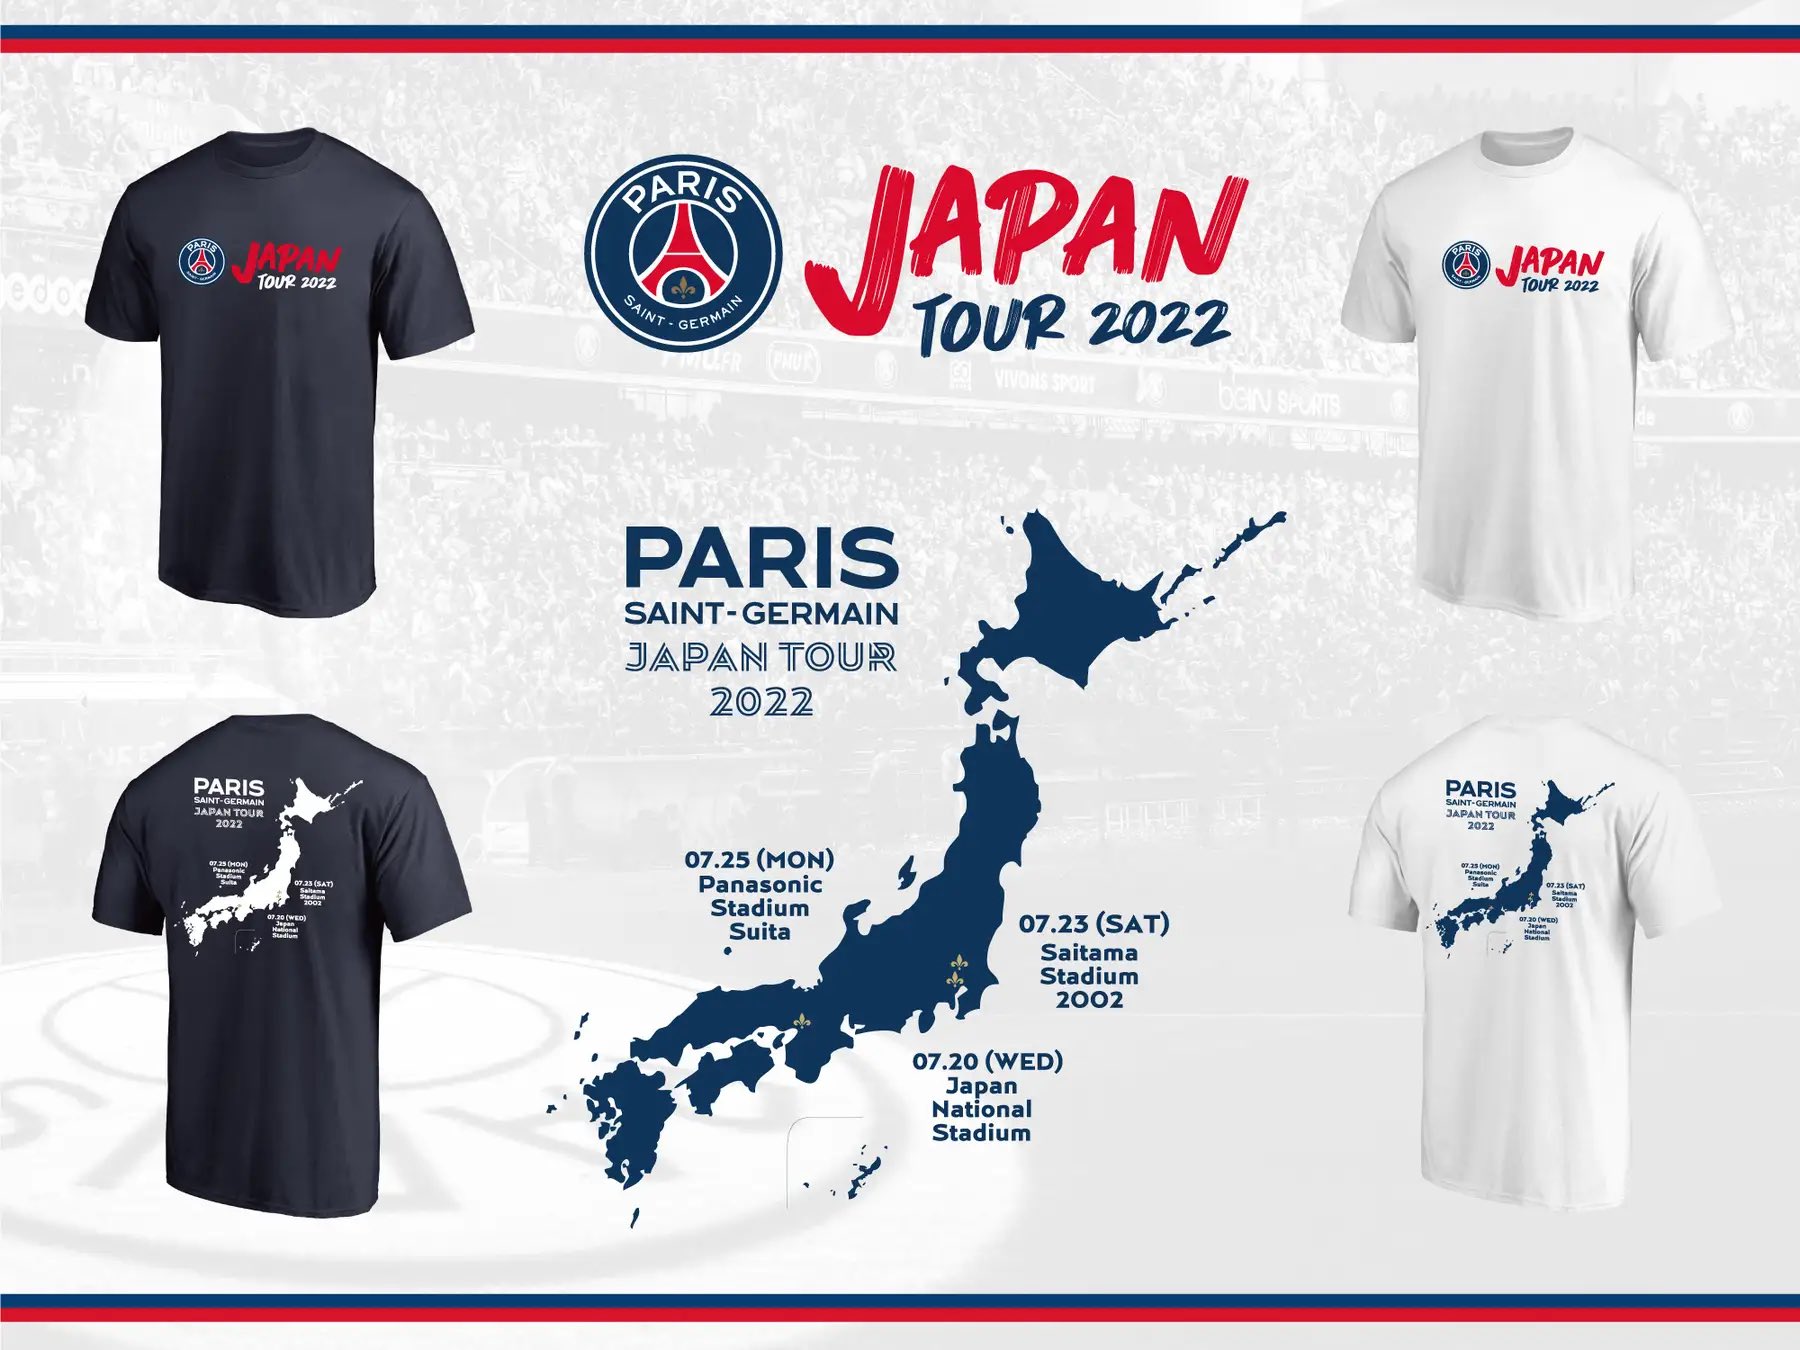 ネットワーク全体の最低価格に挑戦 PSG Japan tour 限定Tシャツ